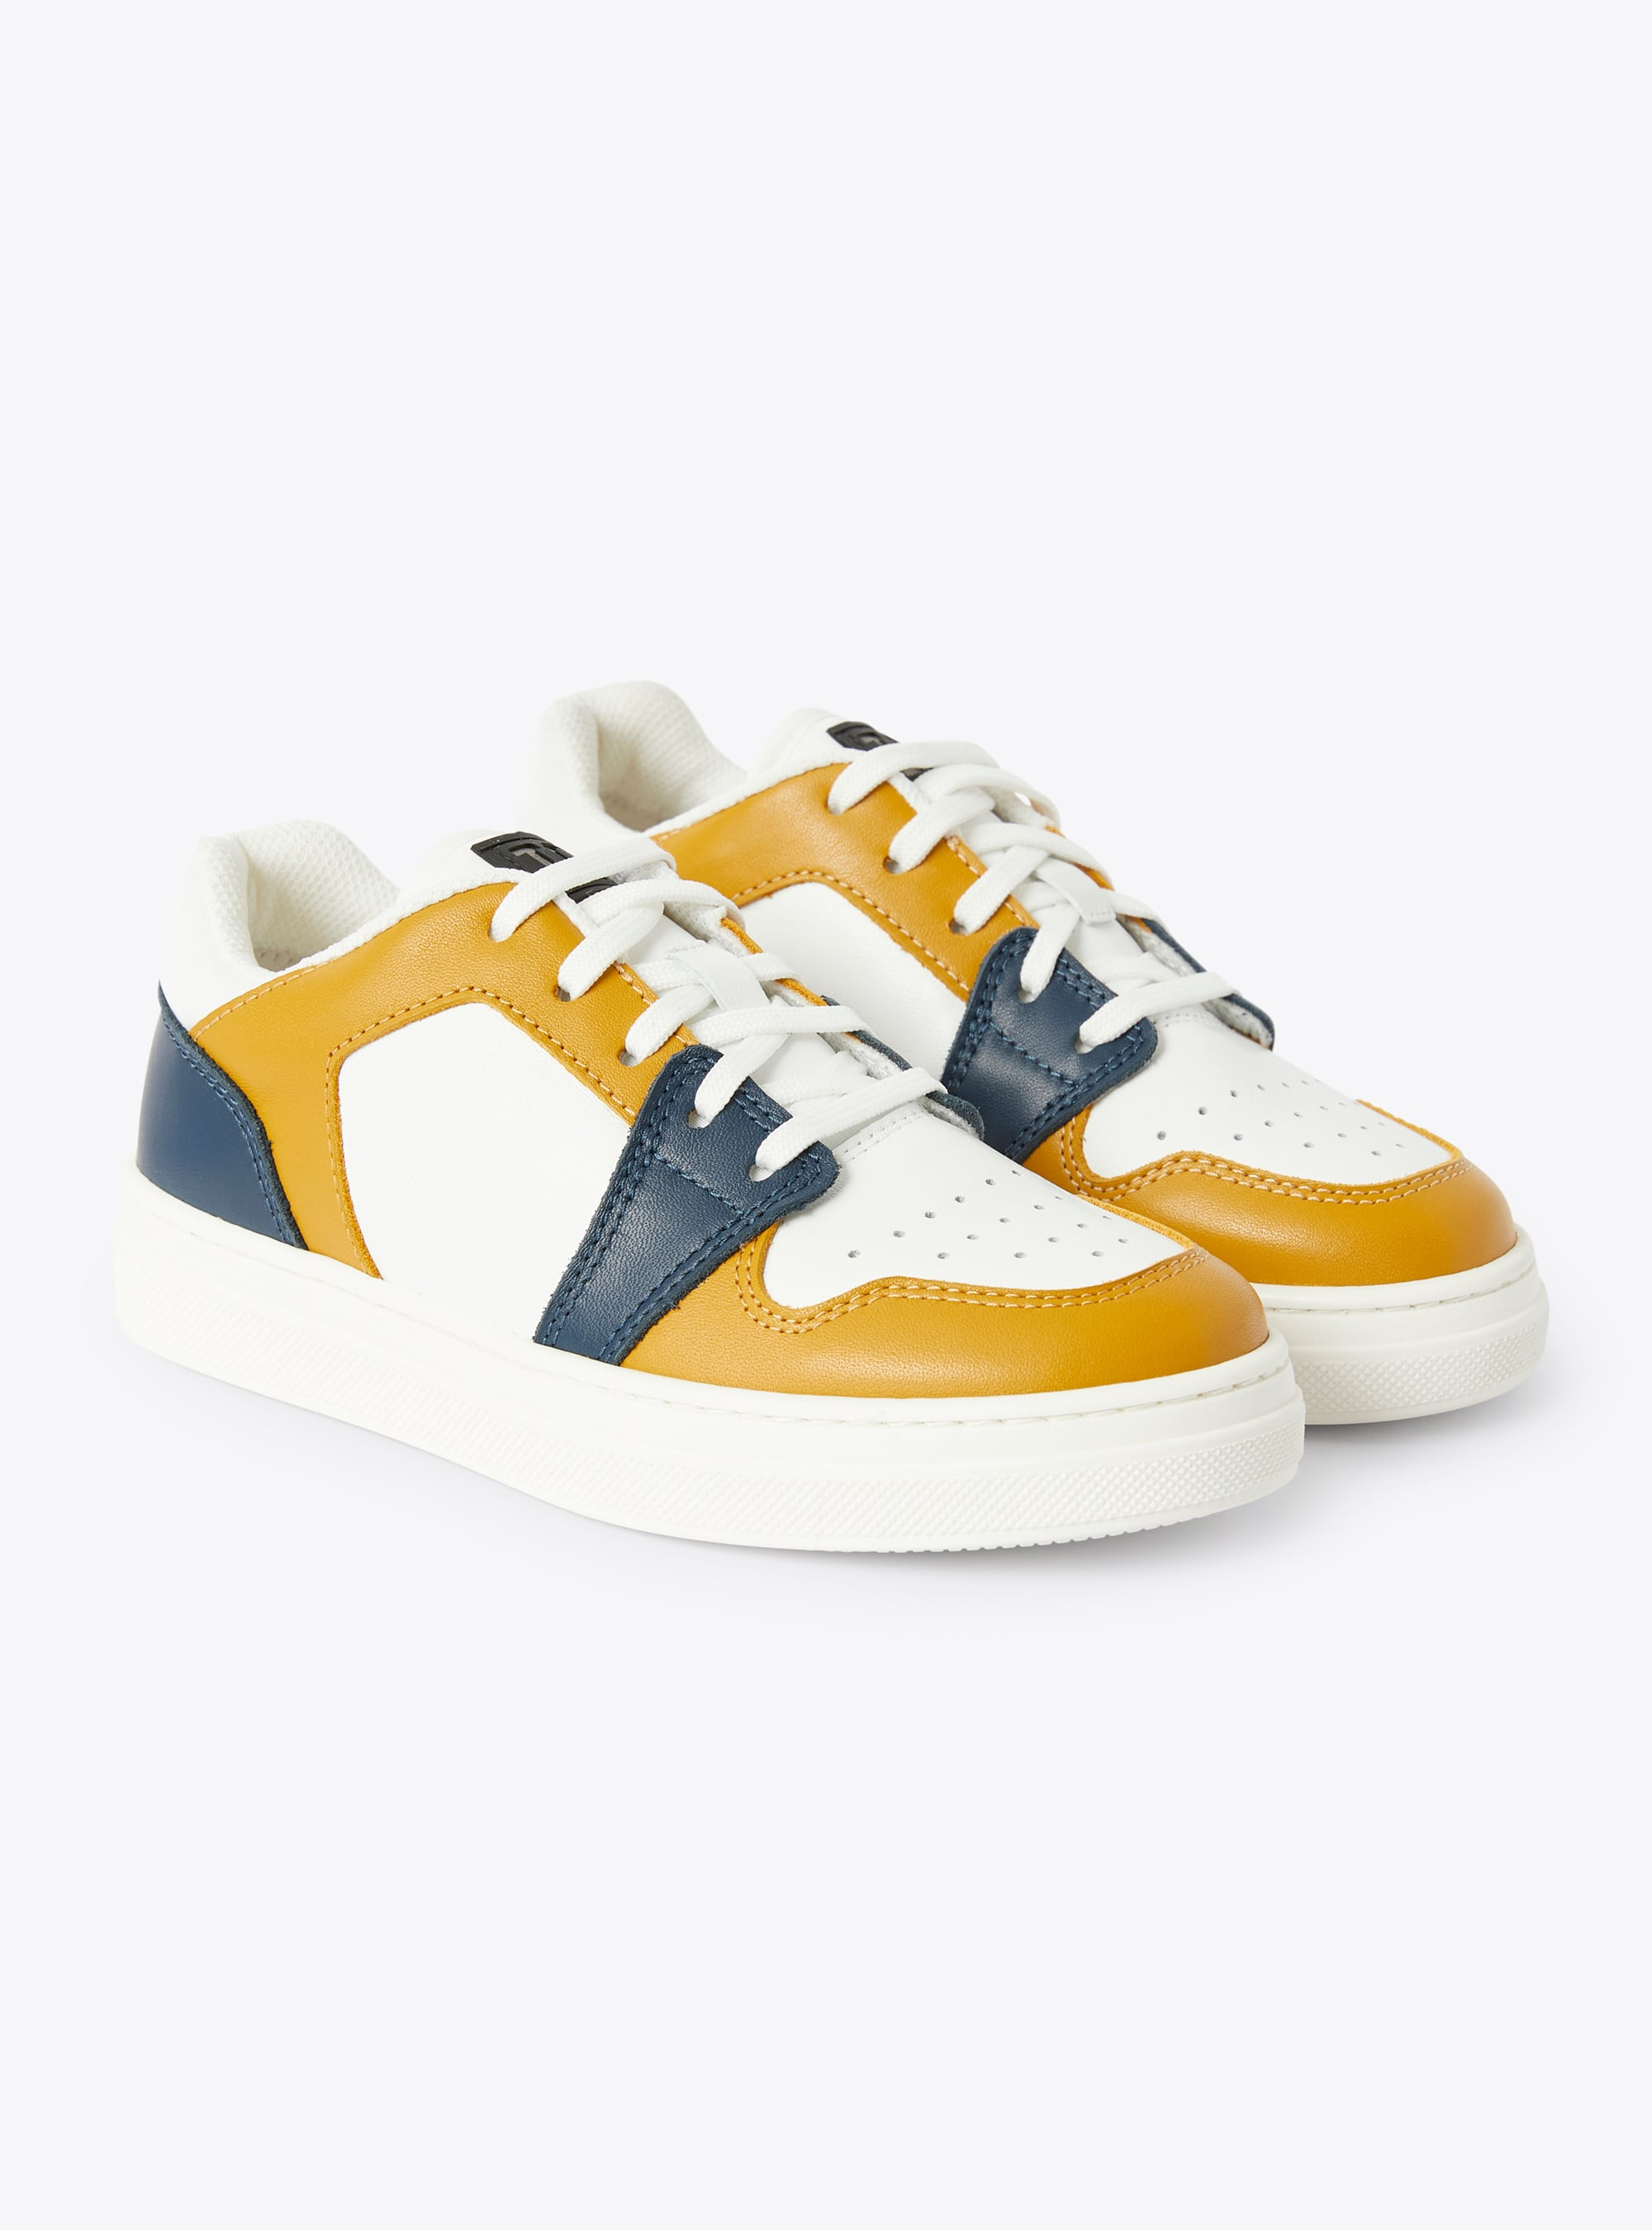 Niedrig geschnittene Sneakers IG, zweifarbig zimtfarben und blau - Orange | Il Gufo